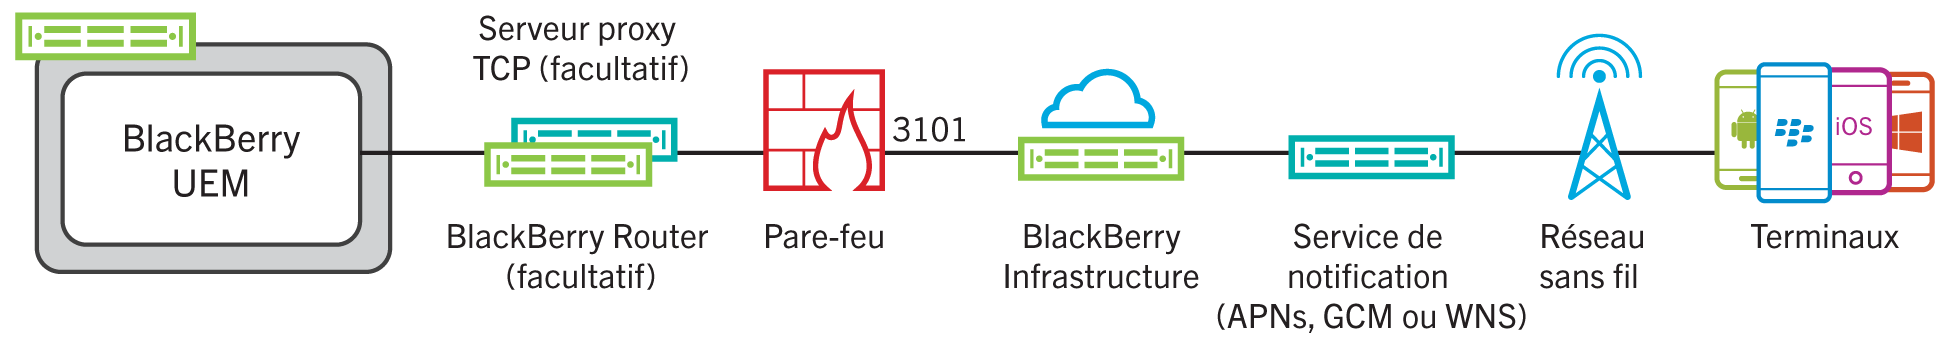 Ce schéma montre comment BlackBerry UEM se connecte à BlackBerry Infrastructure via le port 3101